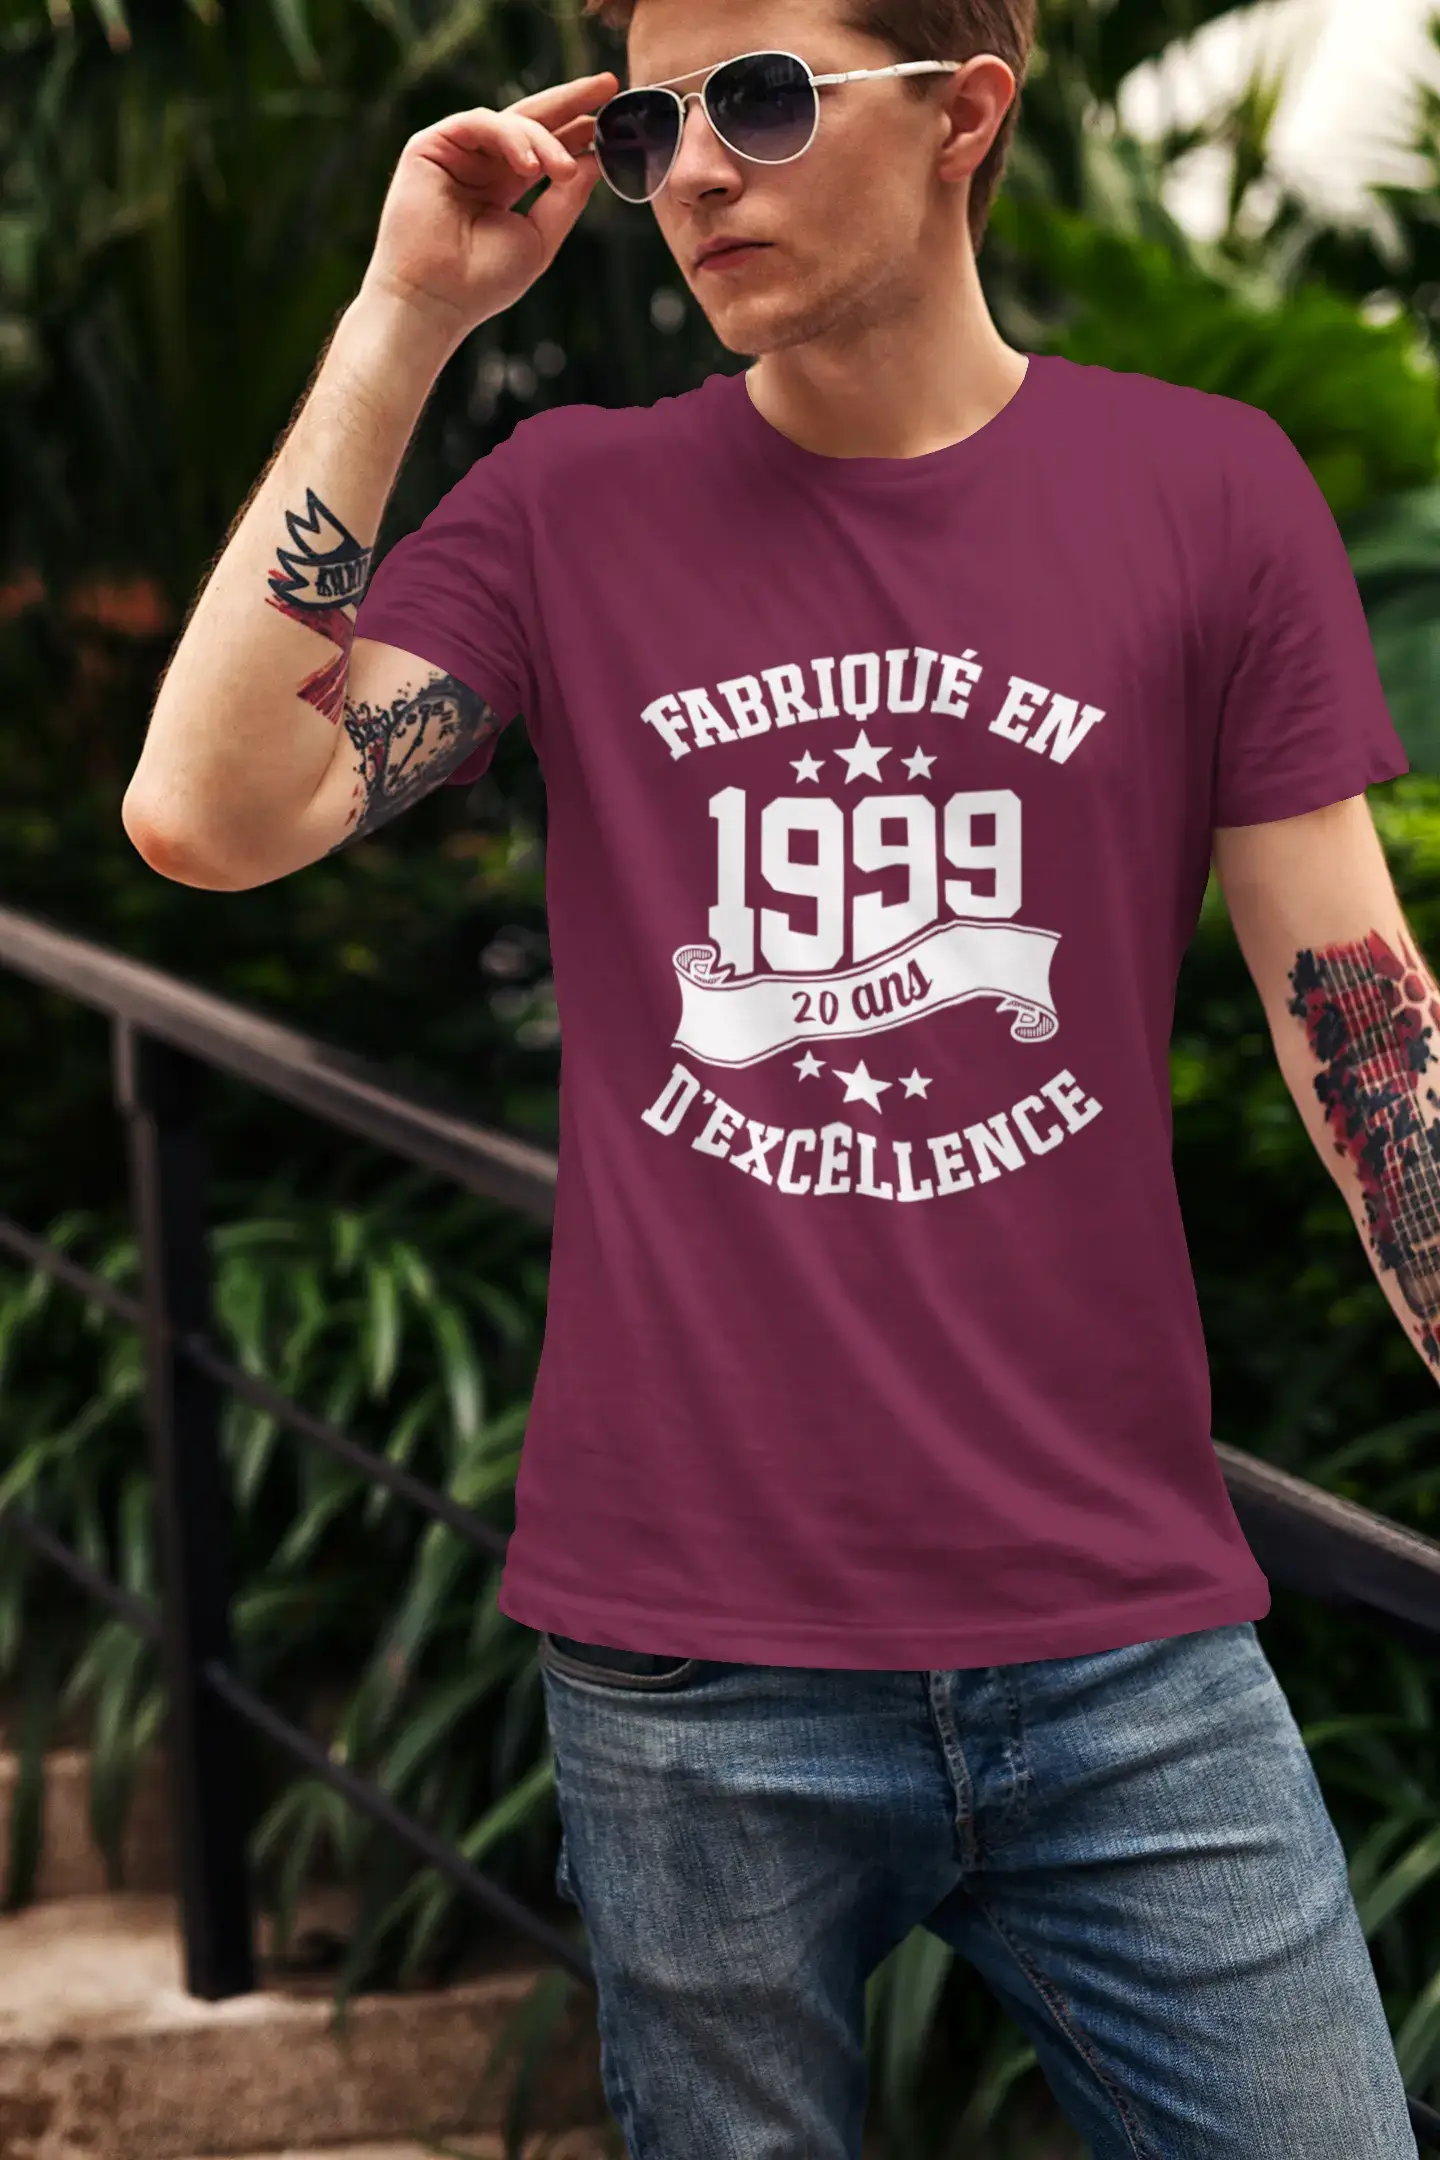 ULTRABASIC – Hergestellt im Jahr 1999, 20 Jahre altes Unisex-T-Shirt Army